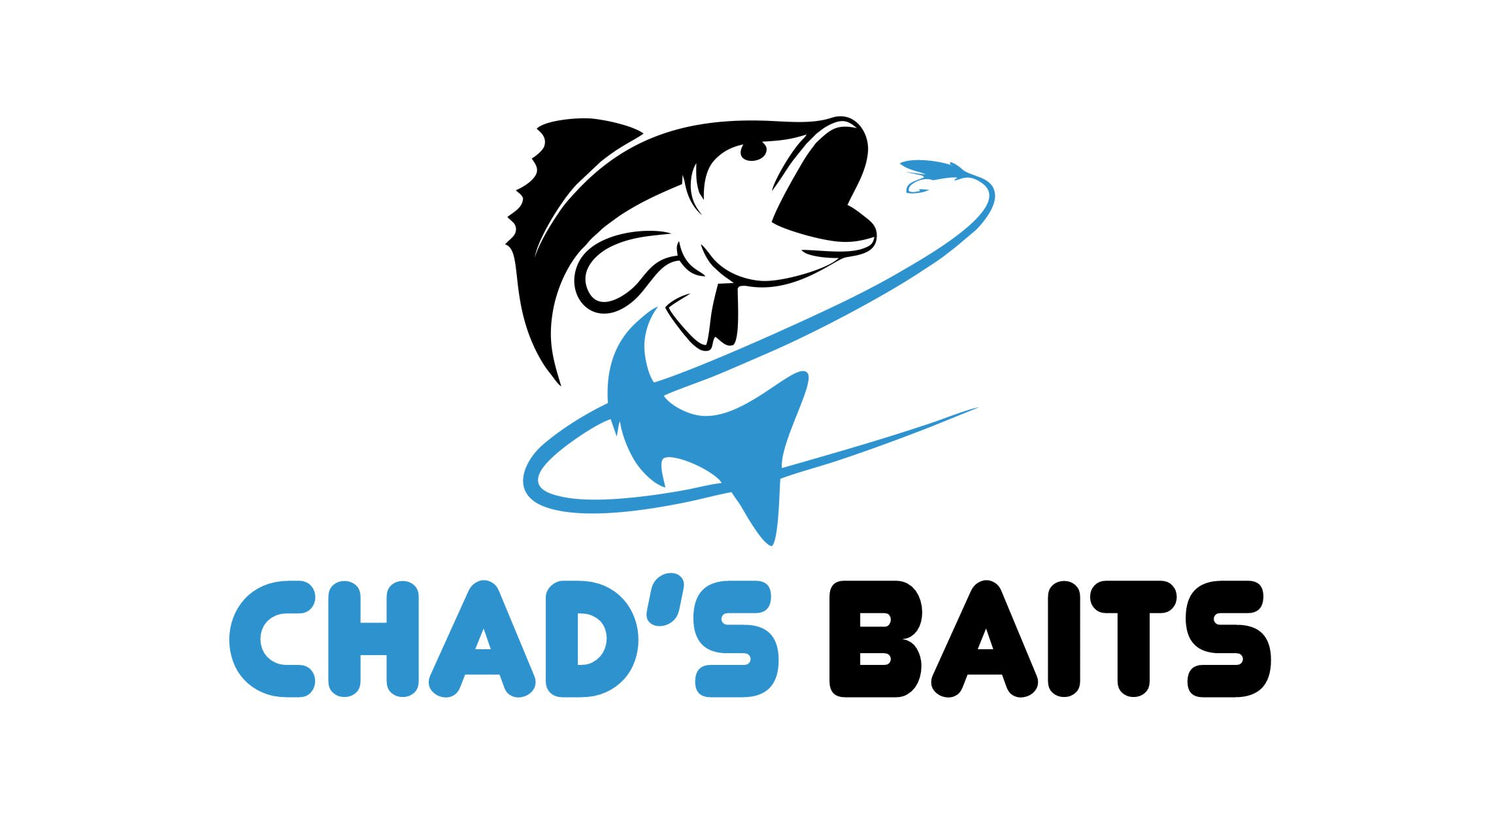 Chad's Baits